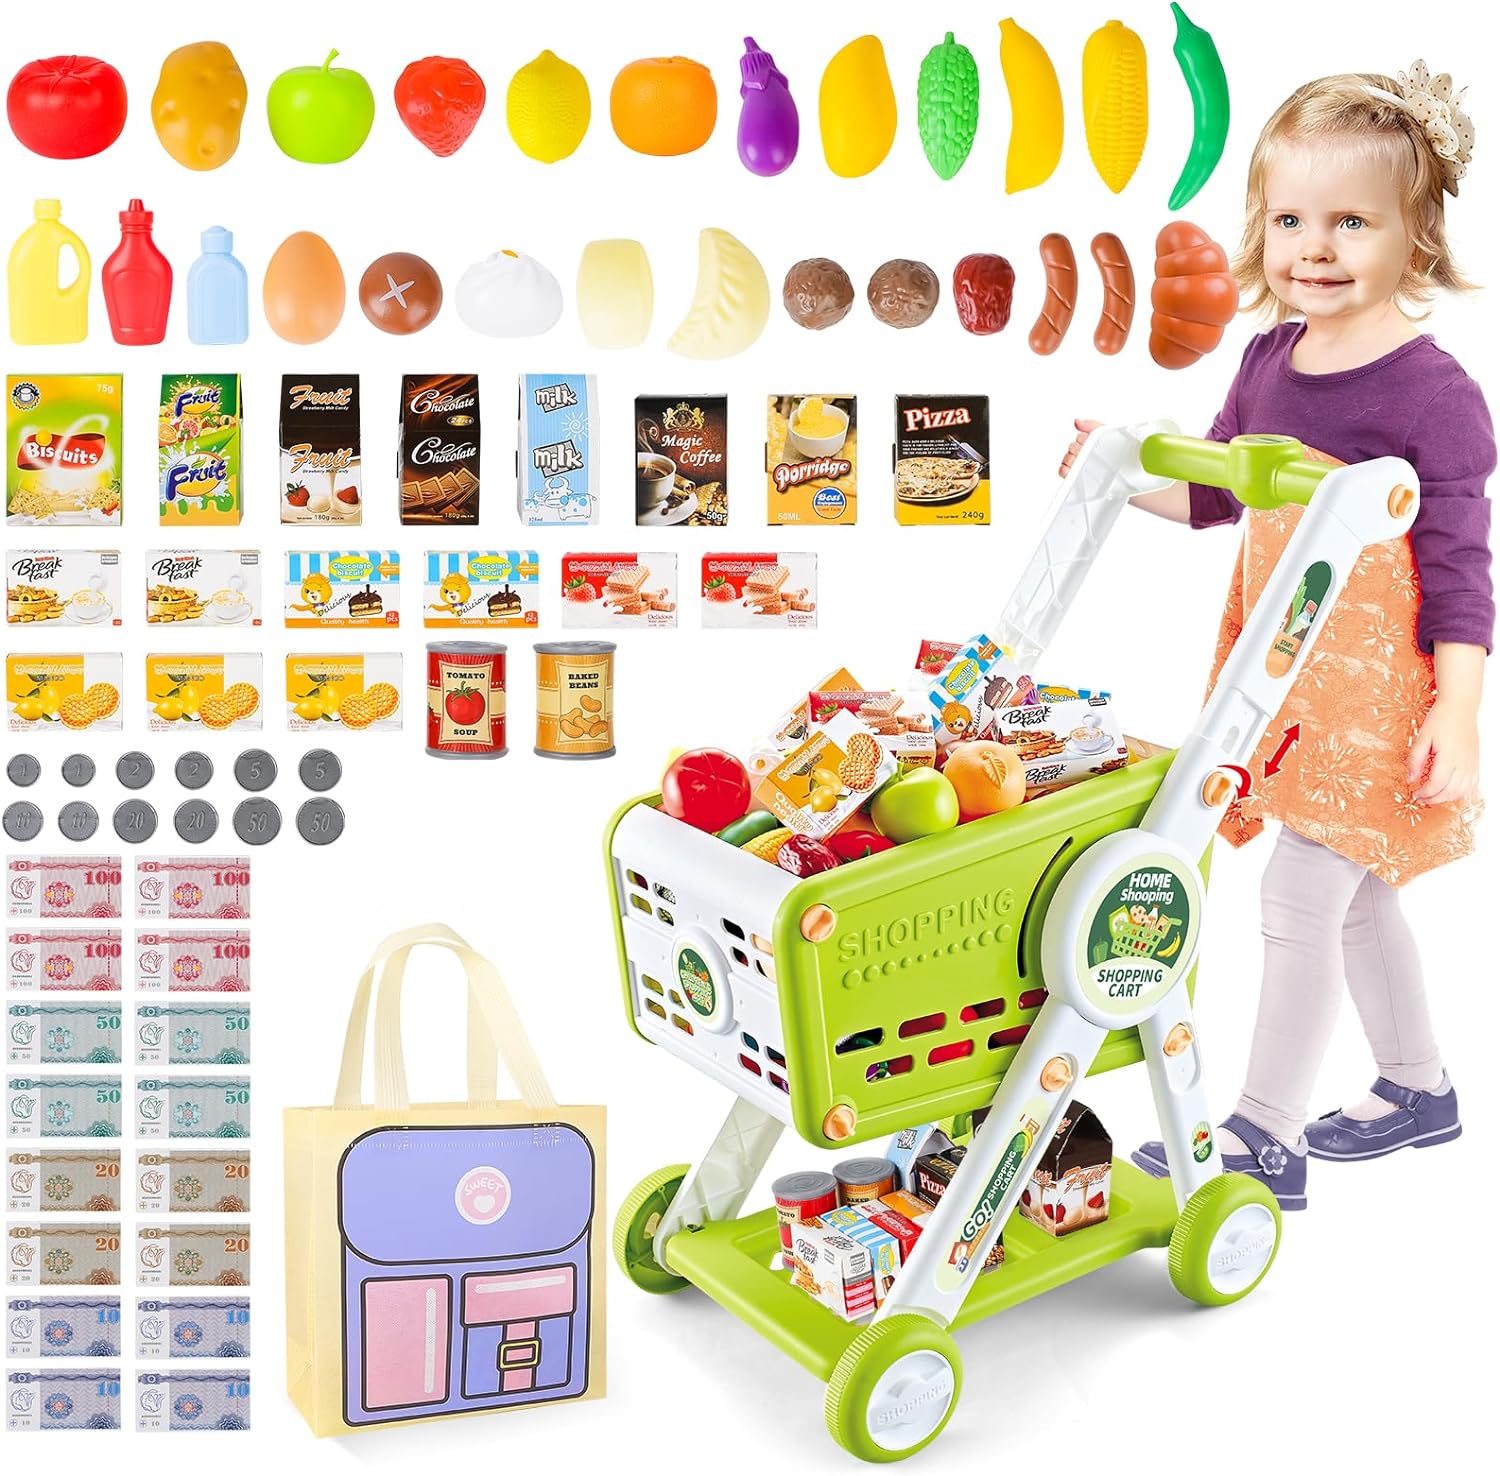 子供のおもちゃのショッピングカート 食べ物、果物、野菜やアクセサリーのふりをしたカート付きおもちゃ 75点セット キッチンのおもちゃ 雑貨のショッピングカート 子供のプレゼント 知育玩具